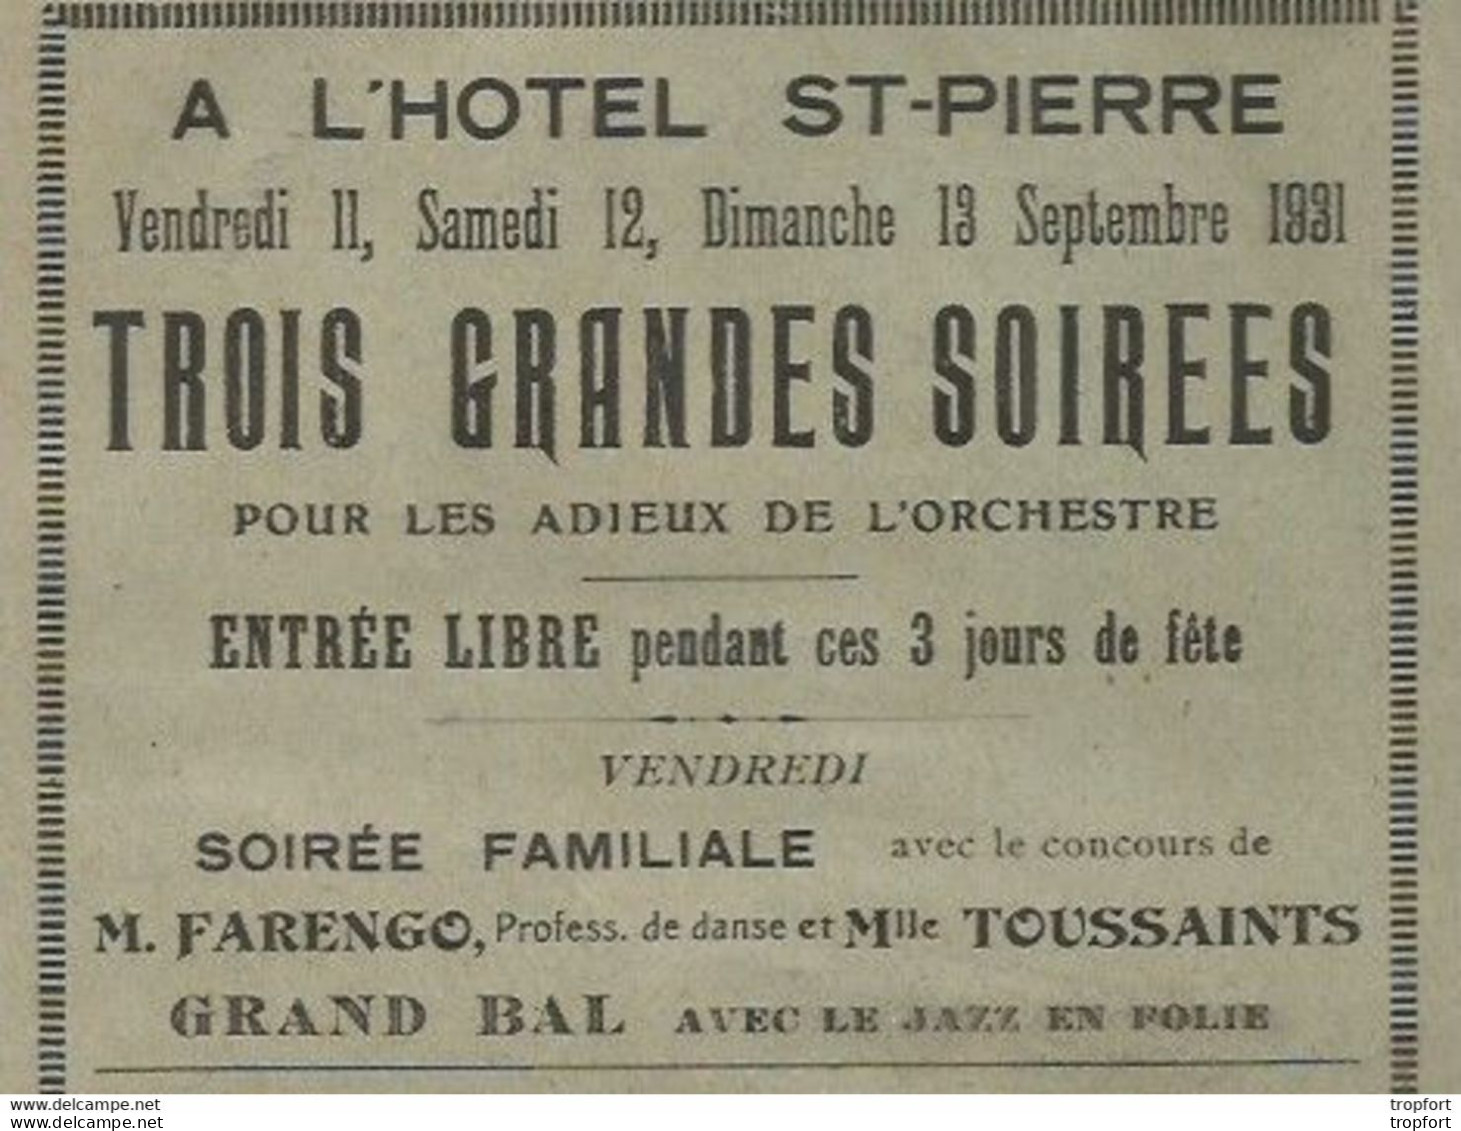 Rare Affichette Programme HOTEL ST-PIERRE 1931 / Baigneurs AULT ONIVAL Farengo Toussaints - Programme